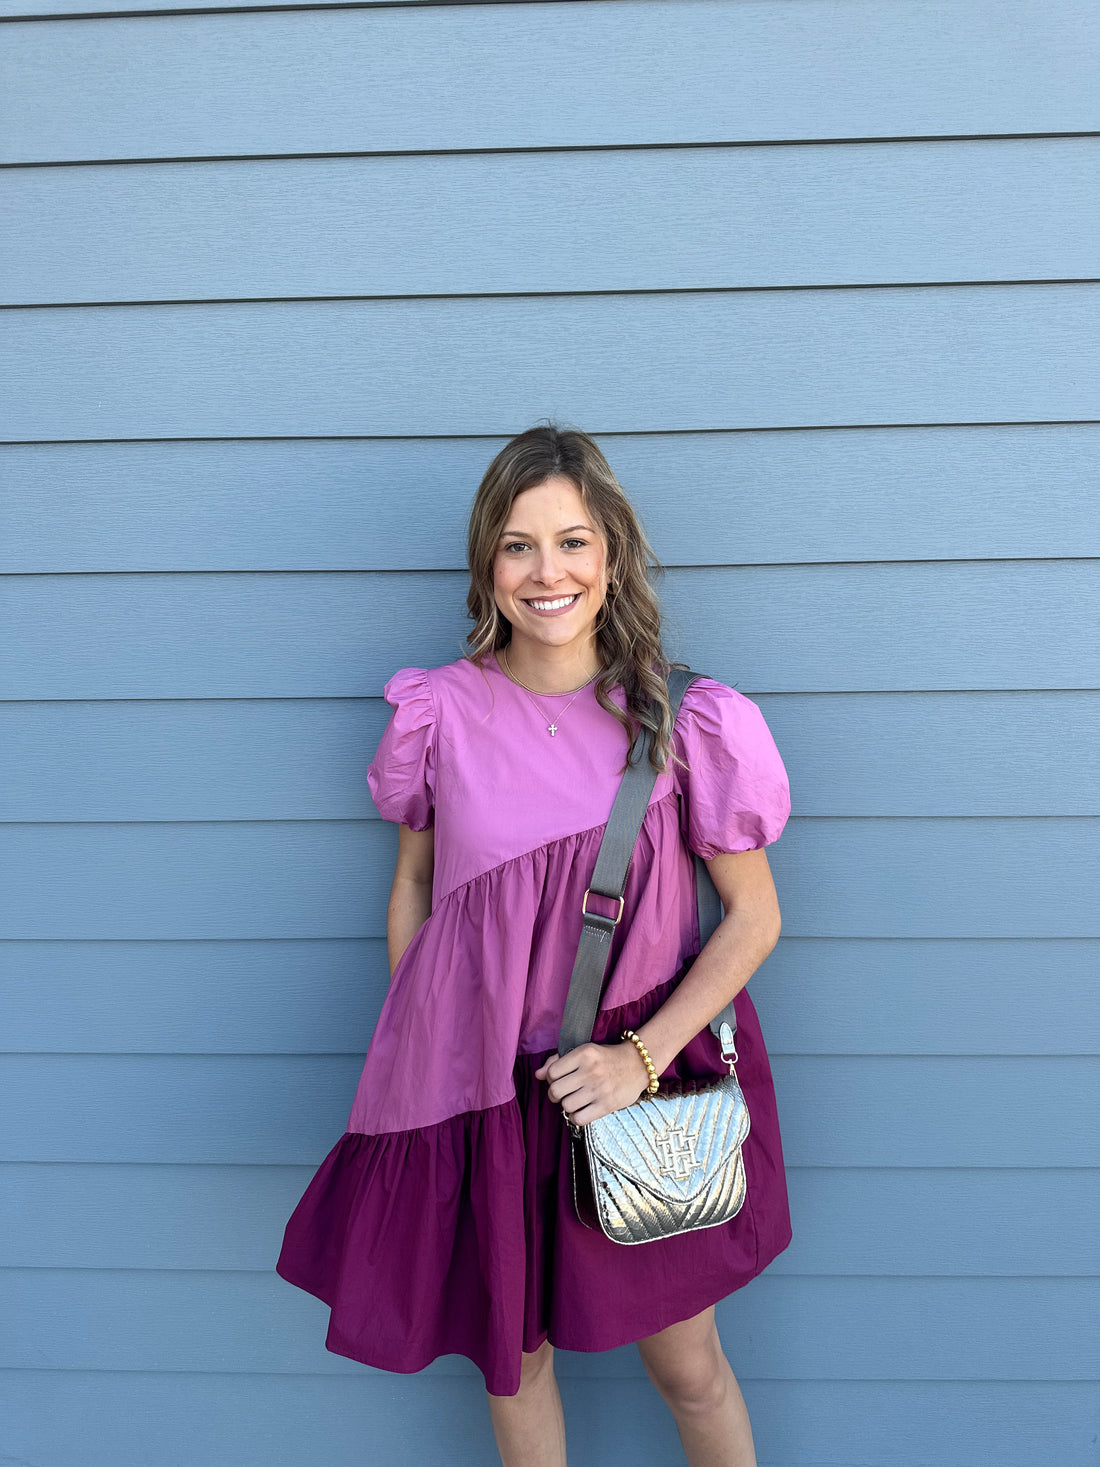 Asymmetrical Color block Puff Sleeve Dress – Wiregrass Designs